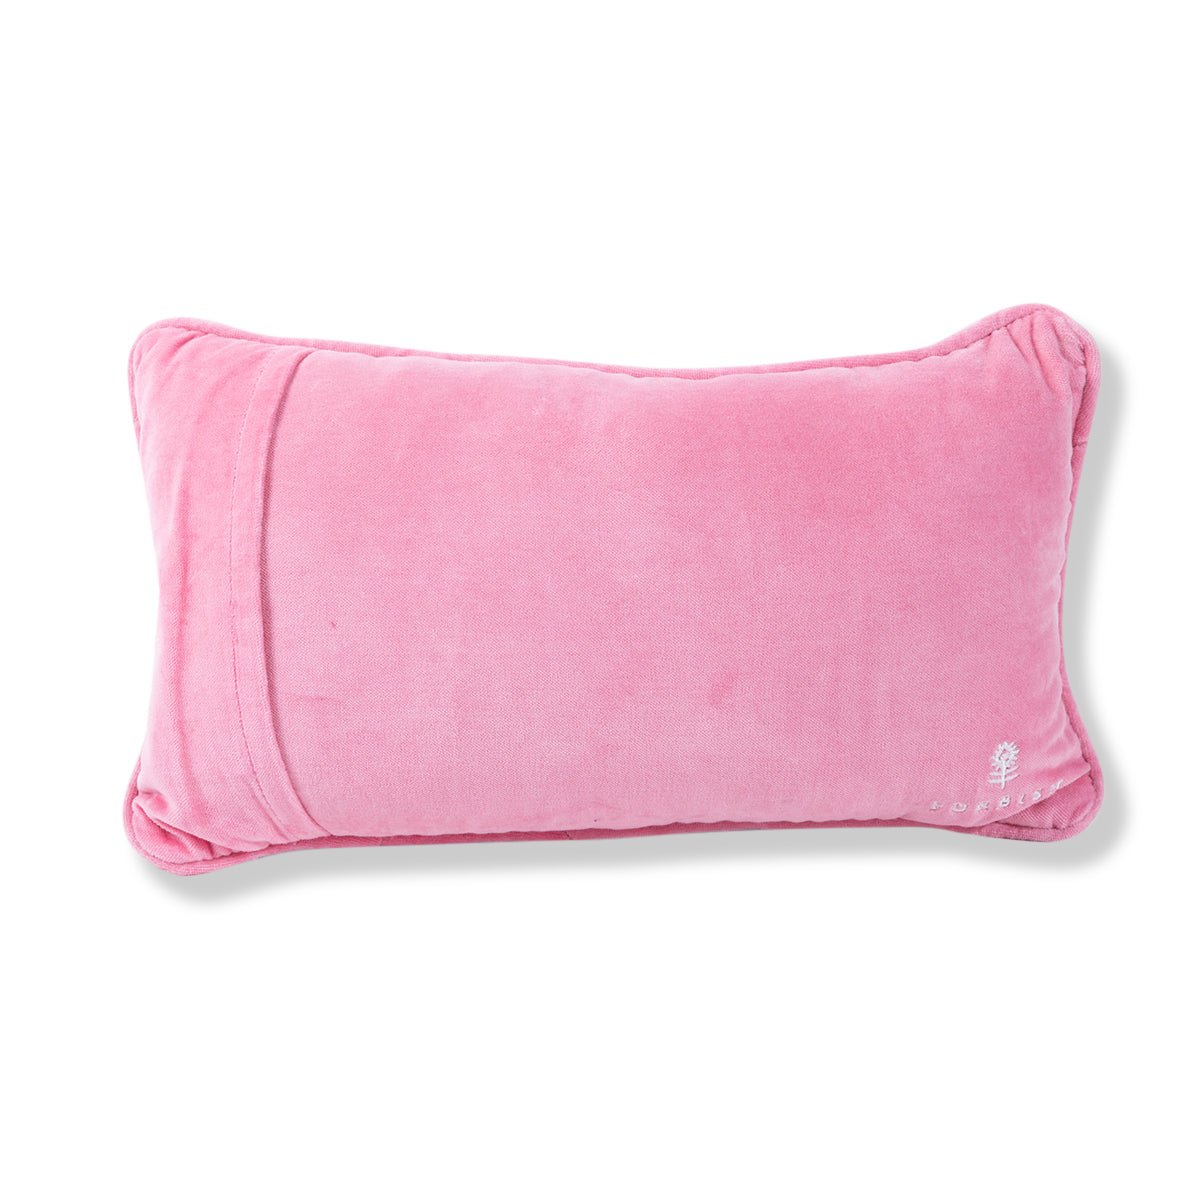 Ain't Nobody Needlepoint Pillow - Throw Pillows - Furbish Studio - The Grove